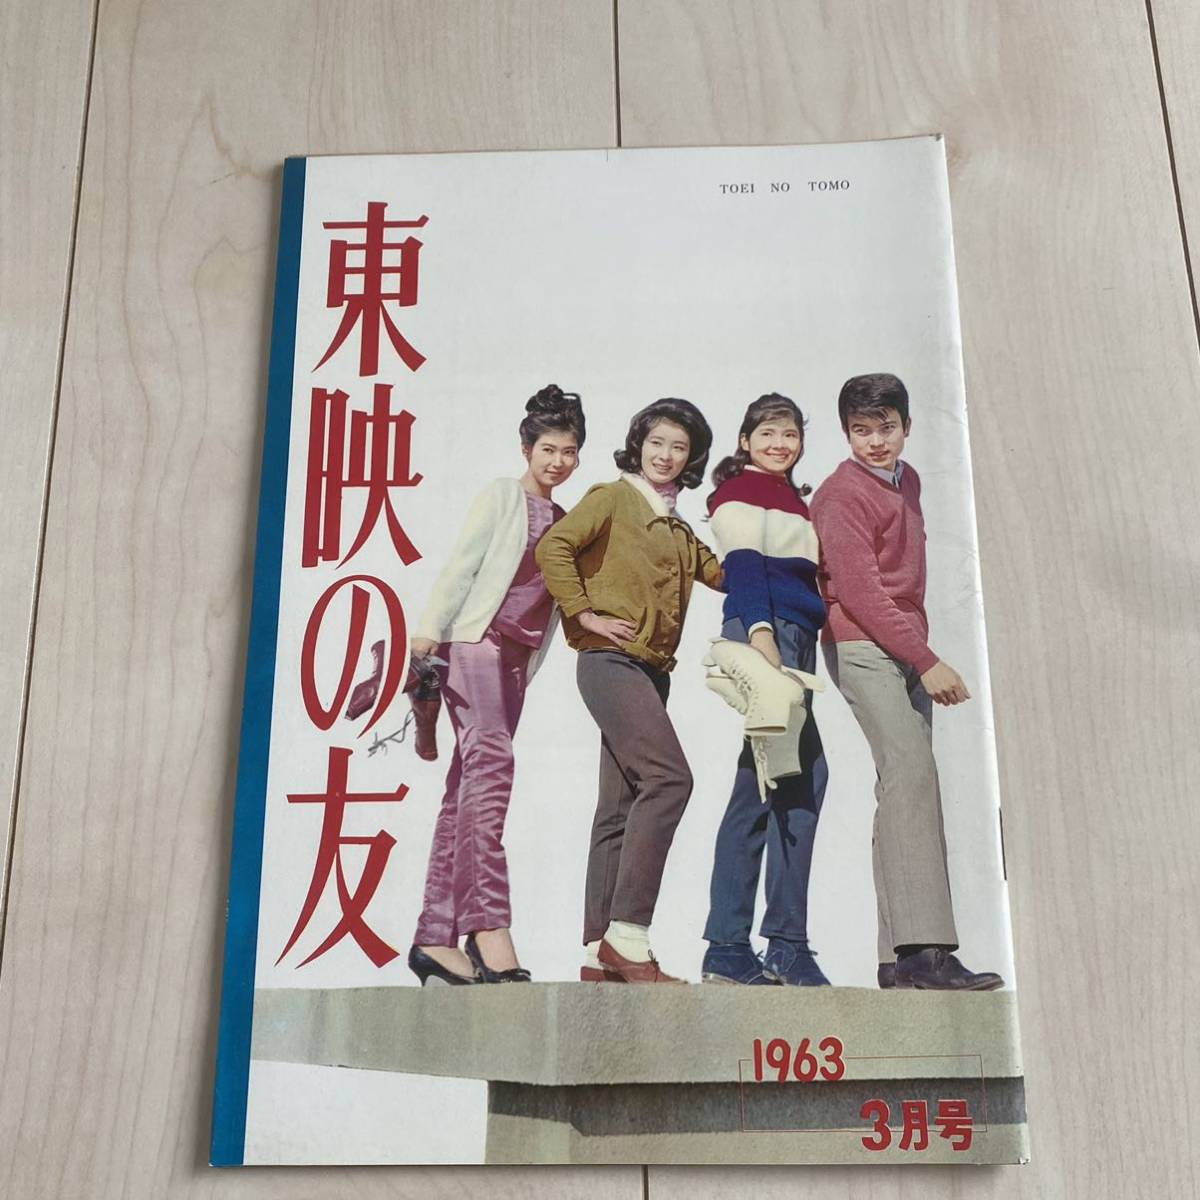 高倉健名作DVD 10本セット美空ひばり、津川雅彦、佐久間良子、千葉真一